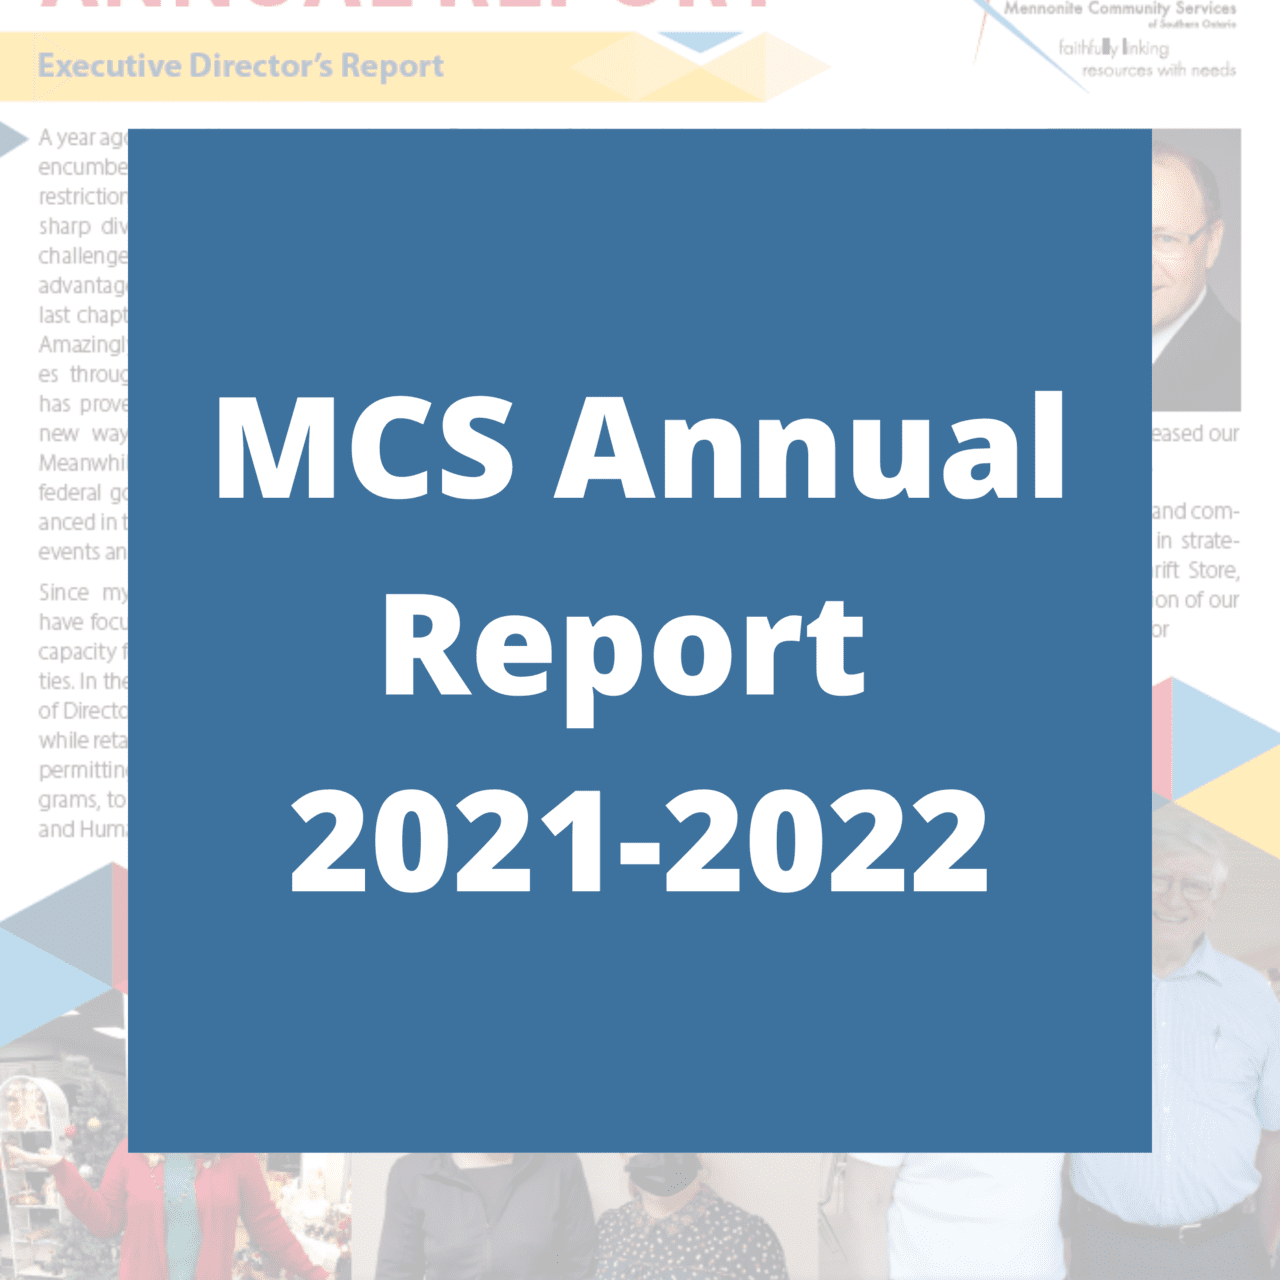 MCS Annual Report 2021-2022